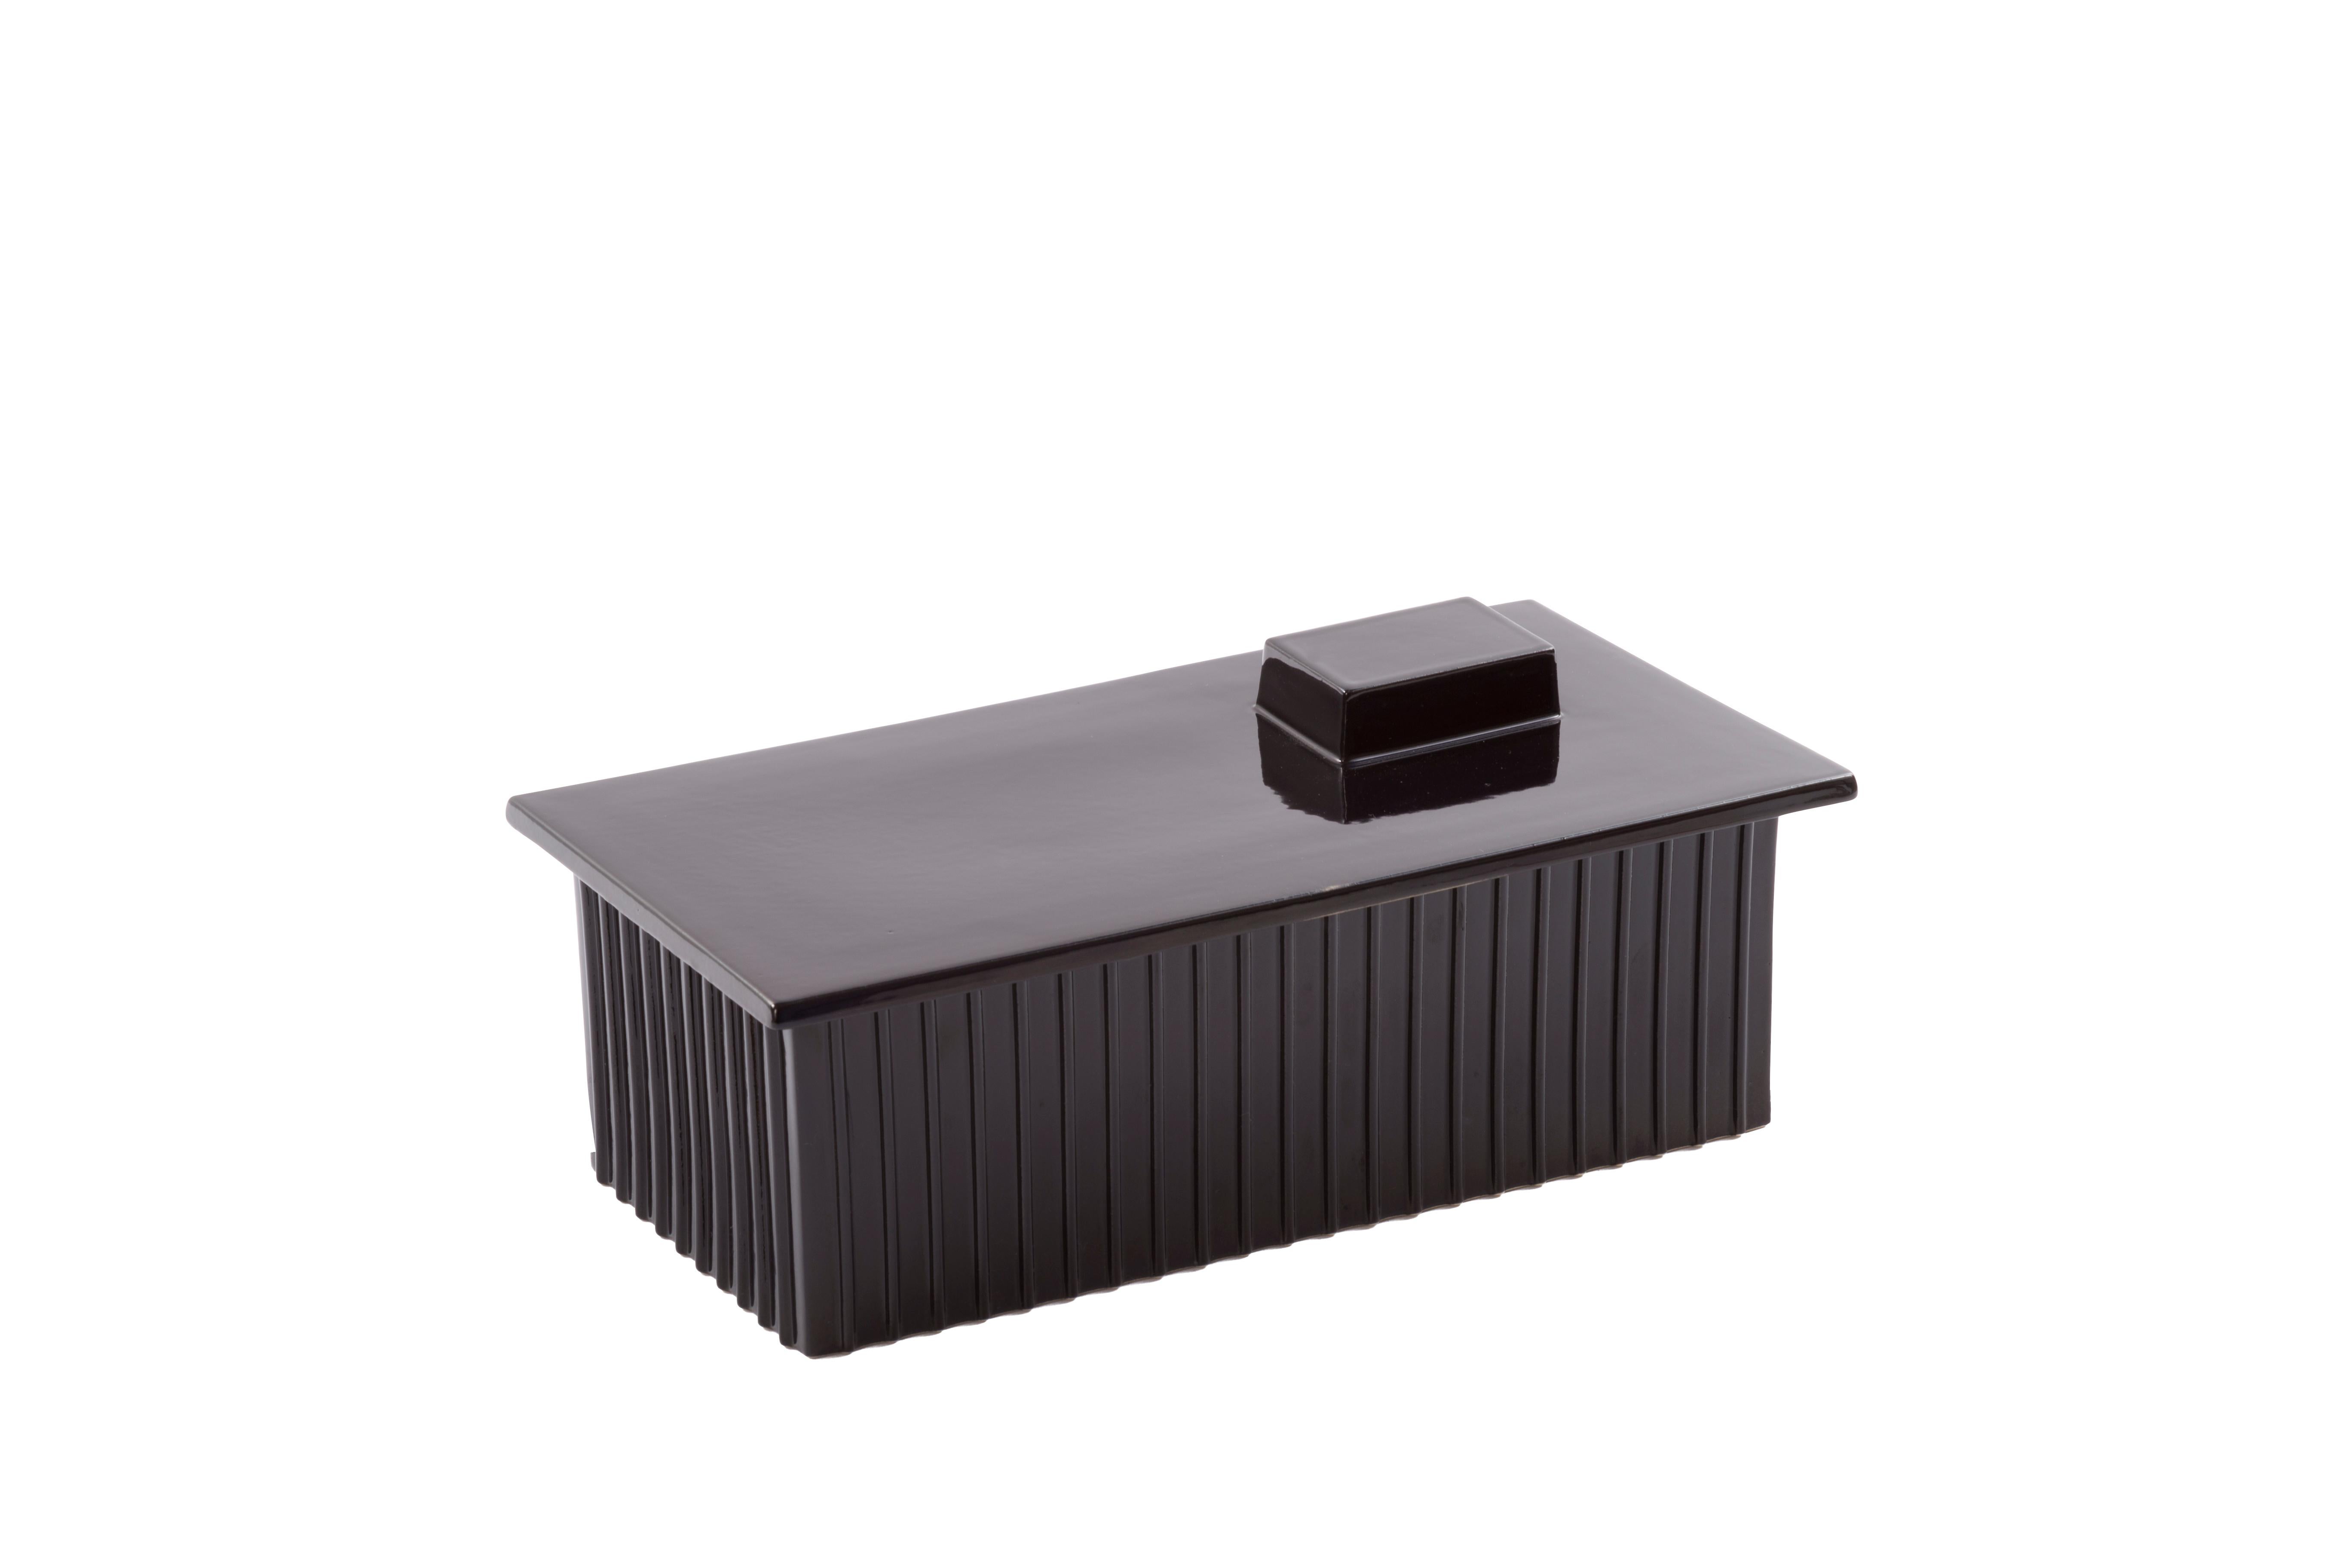 Bau einer großen schwarzen Box von Pulpo
Abmessungen: T32,5 x B17 x H13 cm
MATERIALIEN: Keramik

Auch in verschiedenen Farben erhältlich.

Diese Baukästen erinnern an die in unseren Stadtlandschaften so bekannten Industriegebiete. Eine industrielle